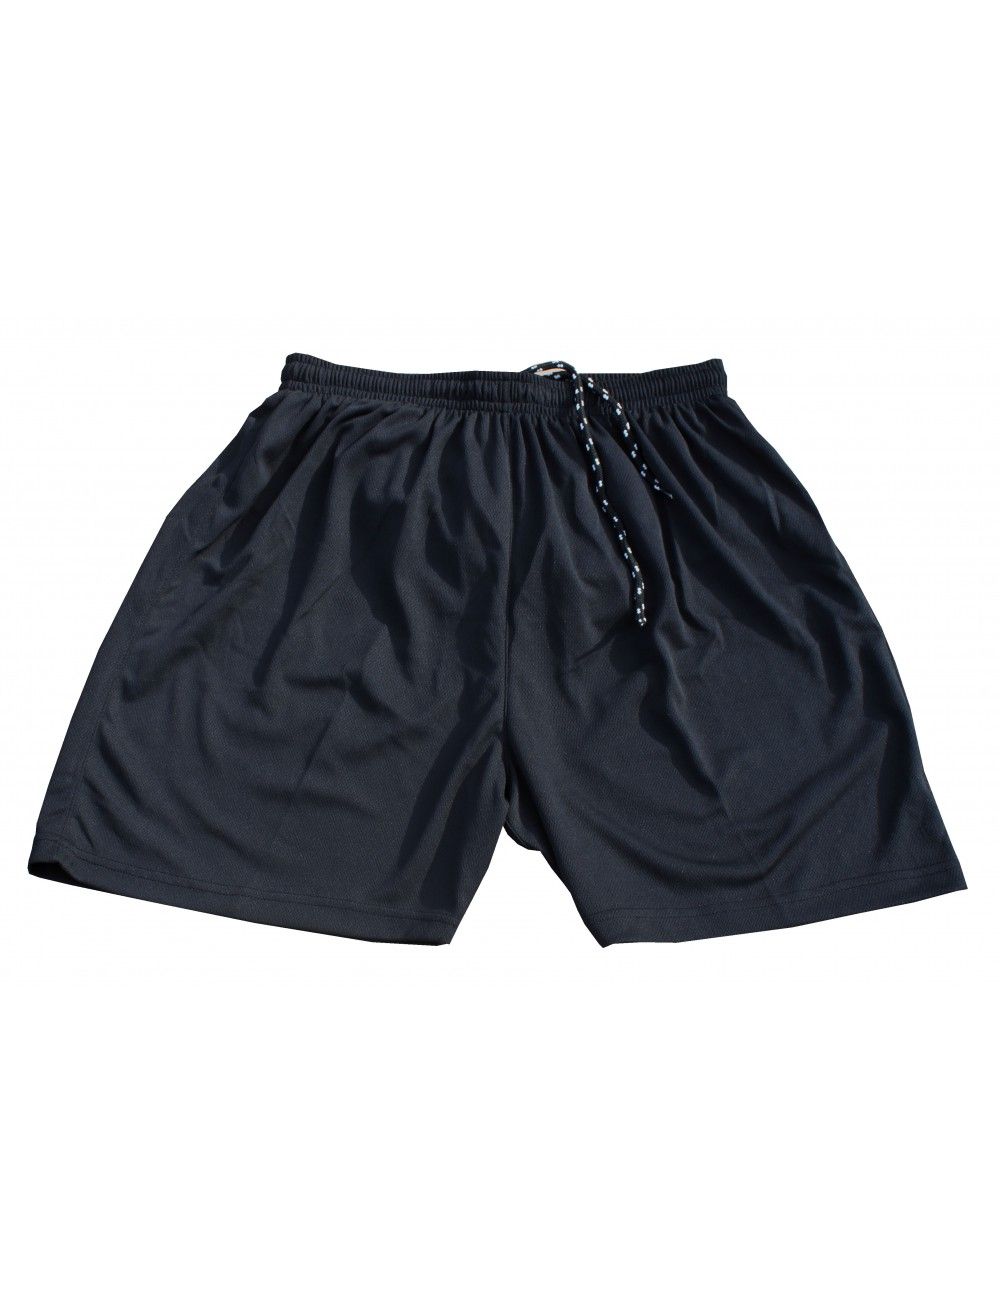 Fußball Hosen / Short mit Innenslip für Kinder und Erwachsene Farbe schwarz - 4